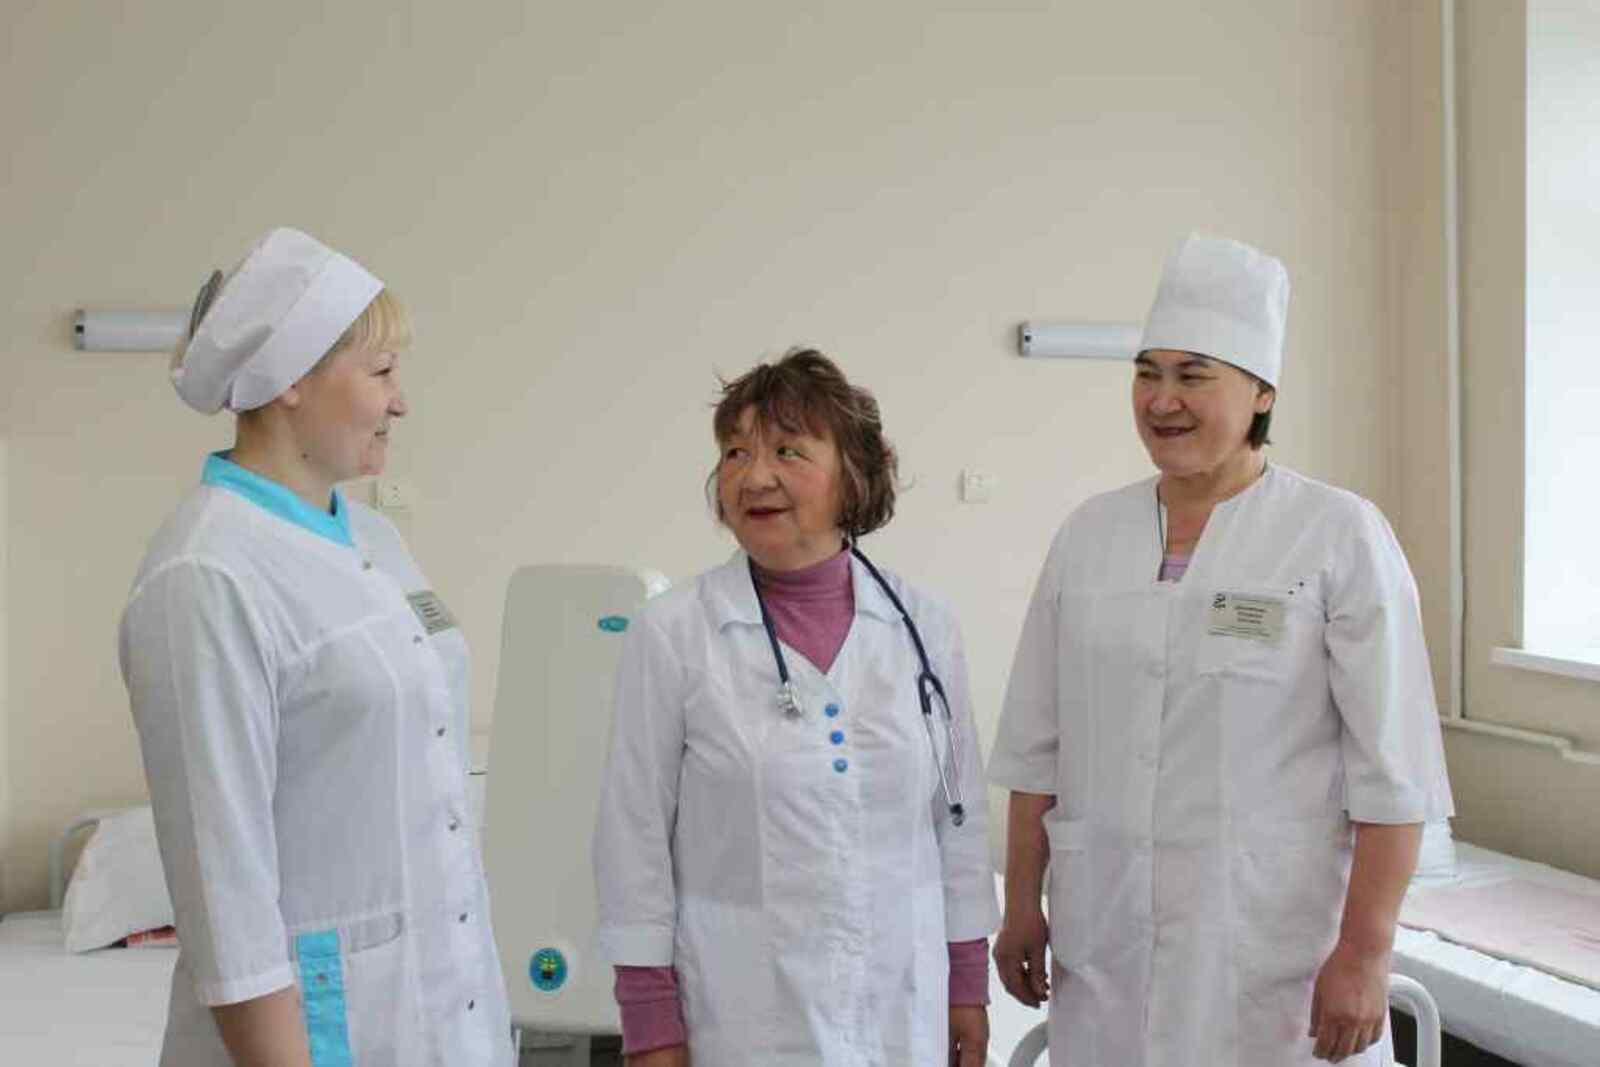 Рука об руку с заведующей Г. Даниловой трудятся медсестры Н. Соколова и А. Давлетова.